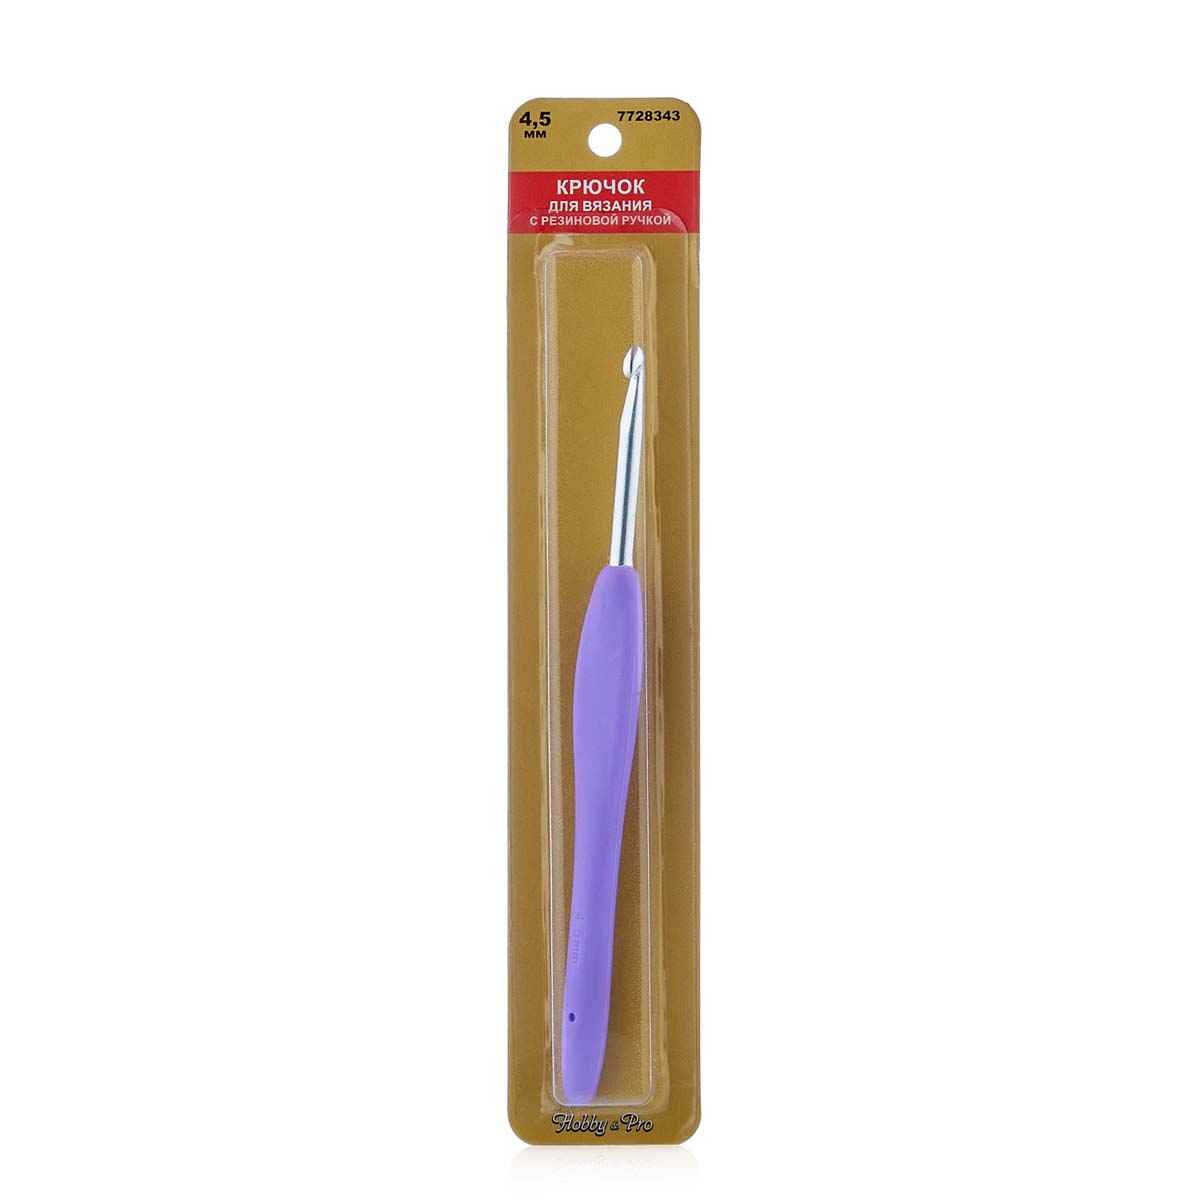 фото Крючок для вязания с резиновой ручкой, 4,5 мм hobby&pro7728343